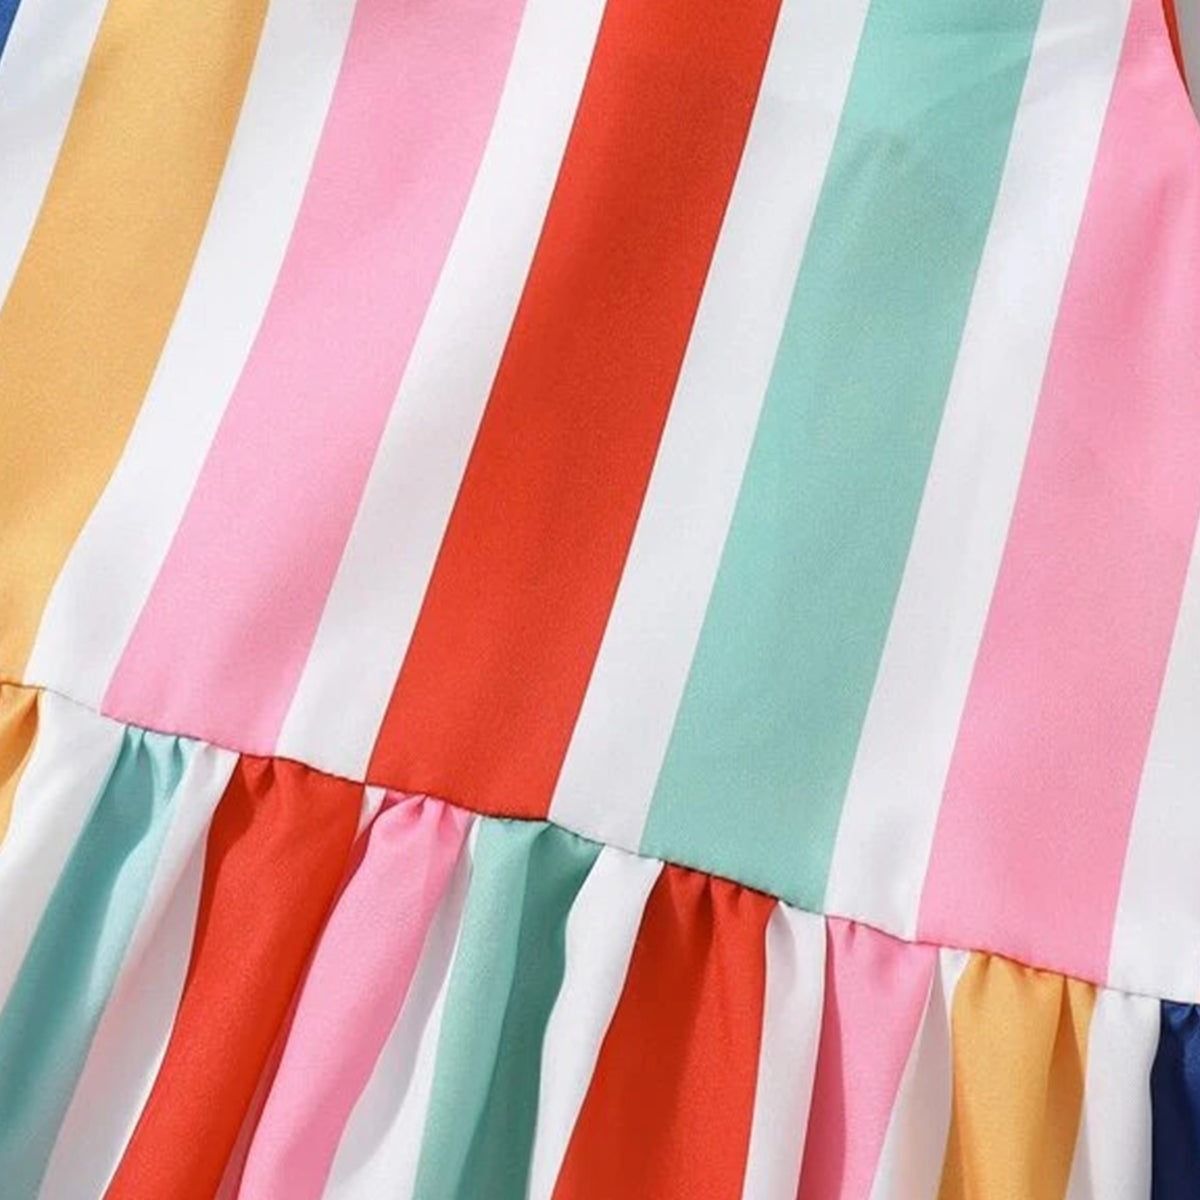 Venutaloza Baygirl Princess Vertical Striped Cami Designer Frocks for Baby Girl.